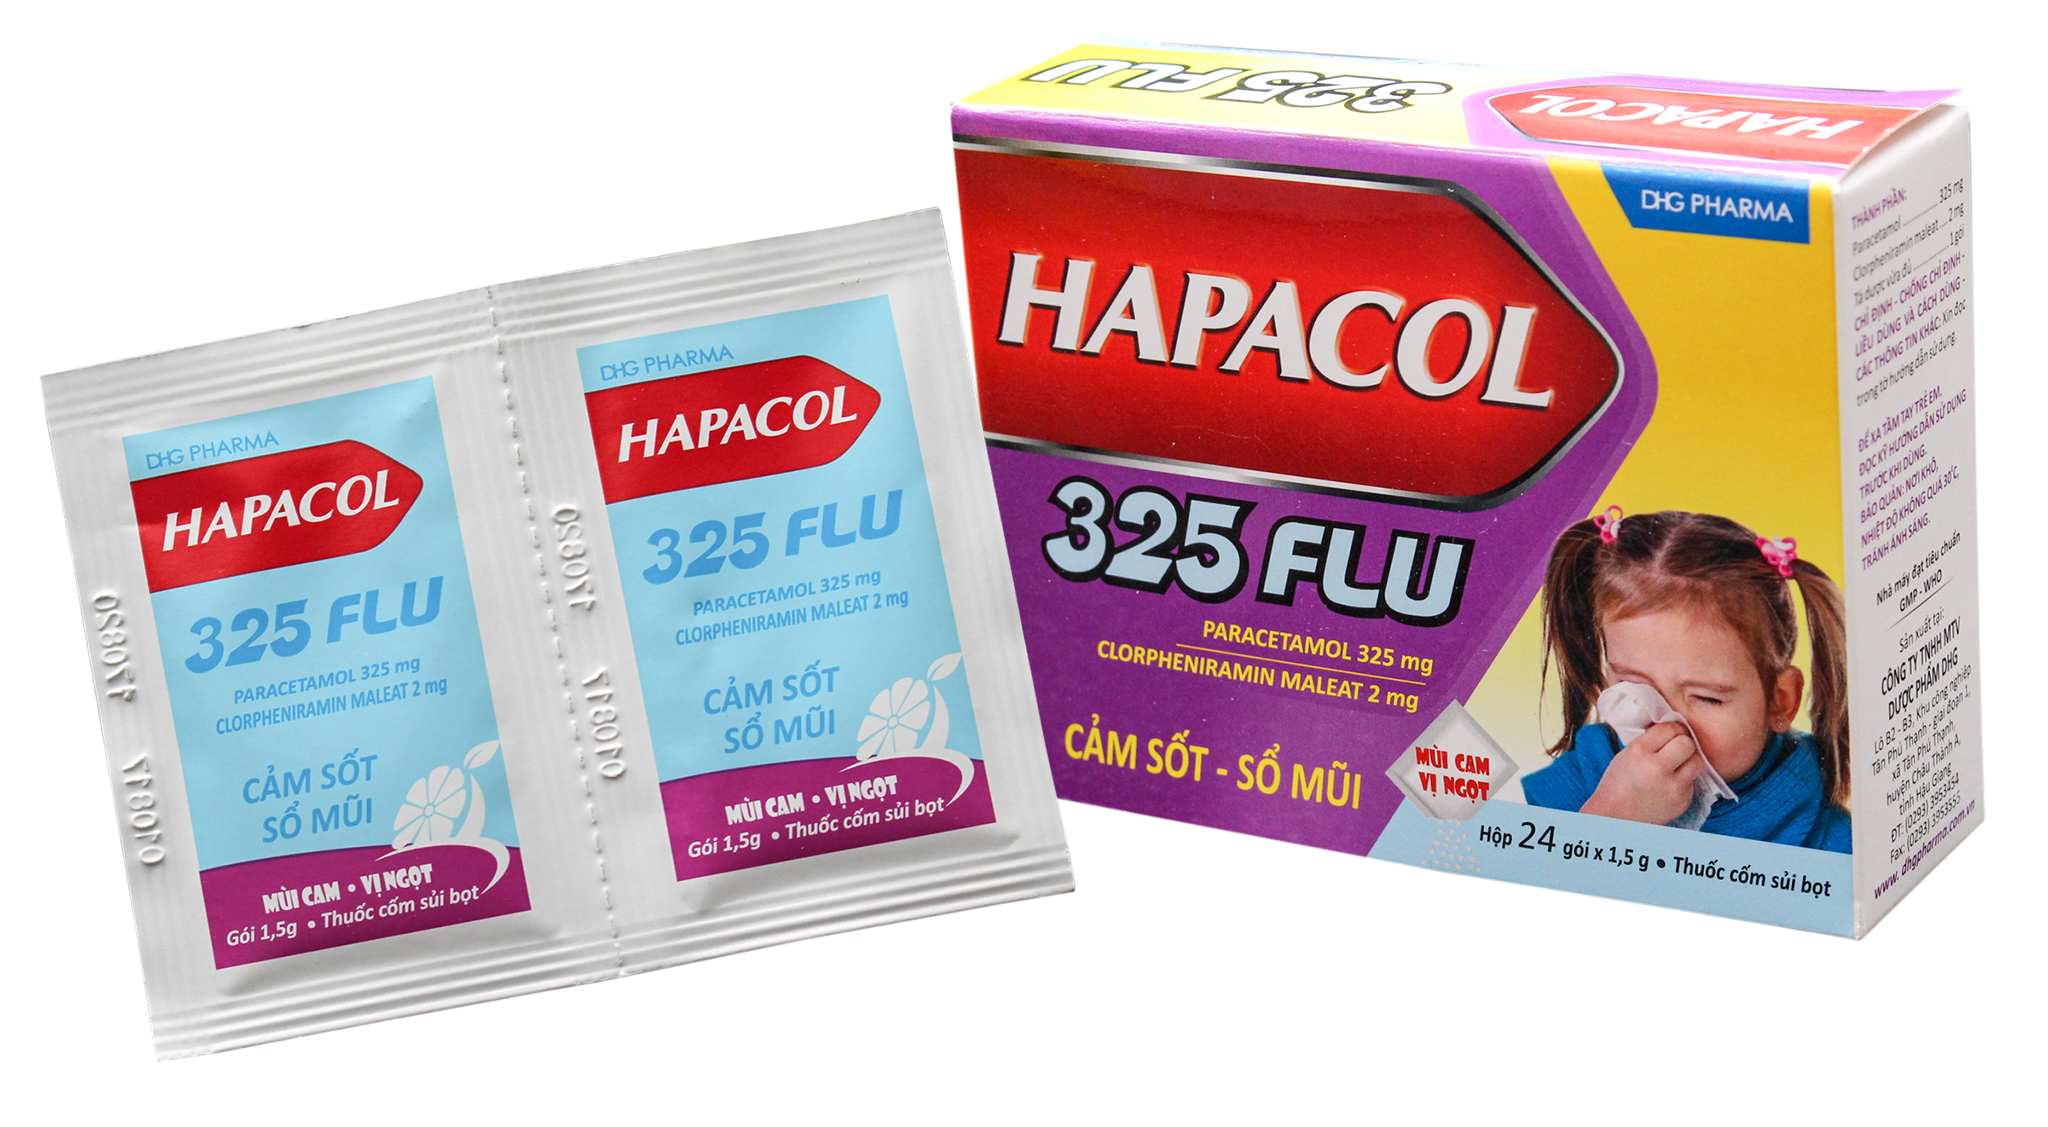 Hapacol 325 Flu (Paracetamol, Clorpheniramin Maleat) DHG Pharma (H/24g)